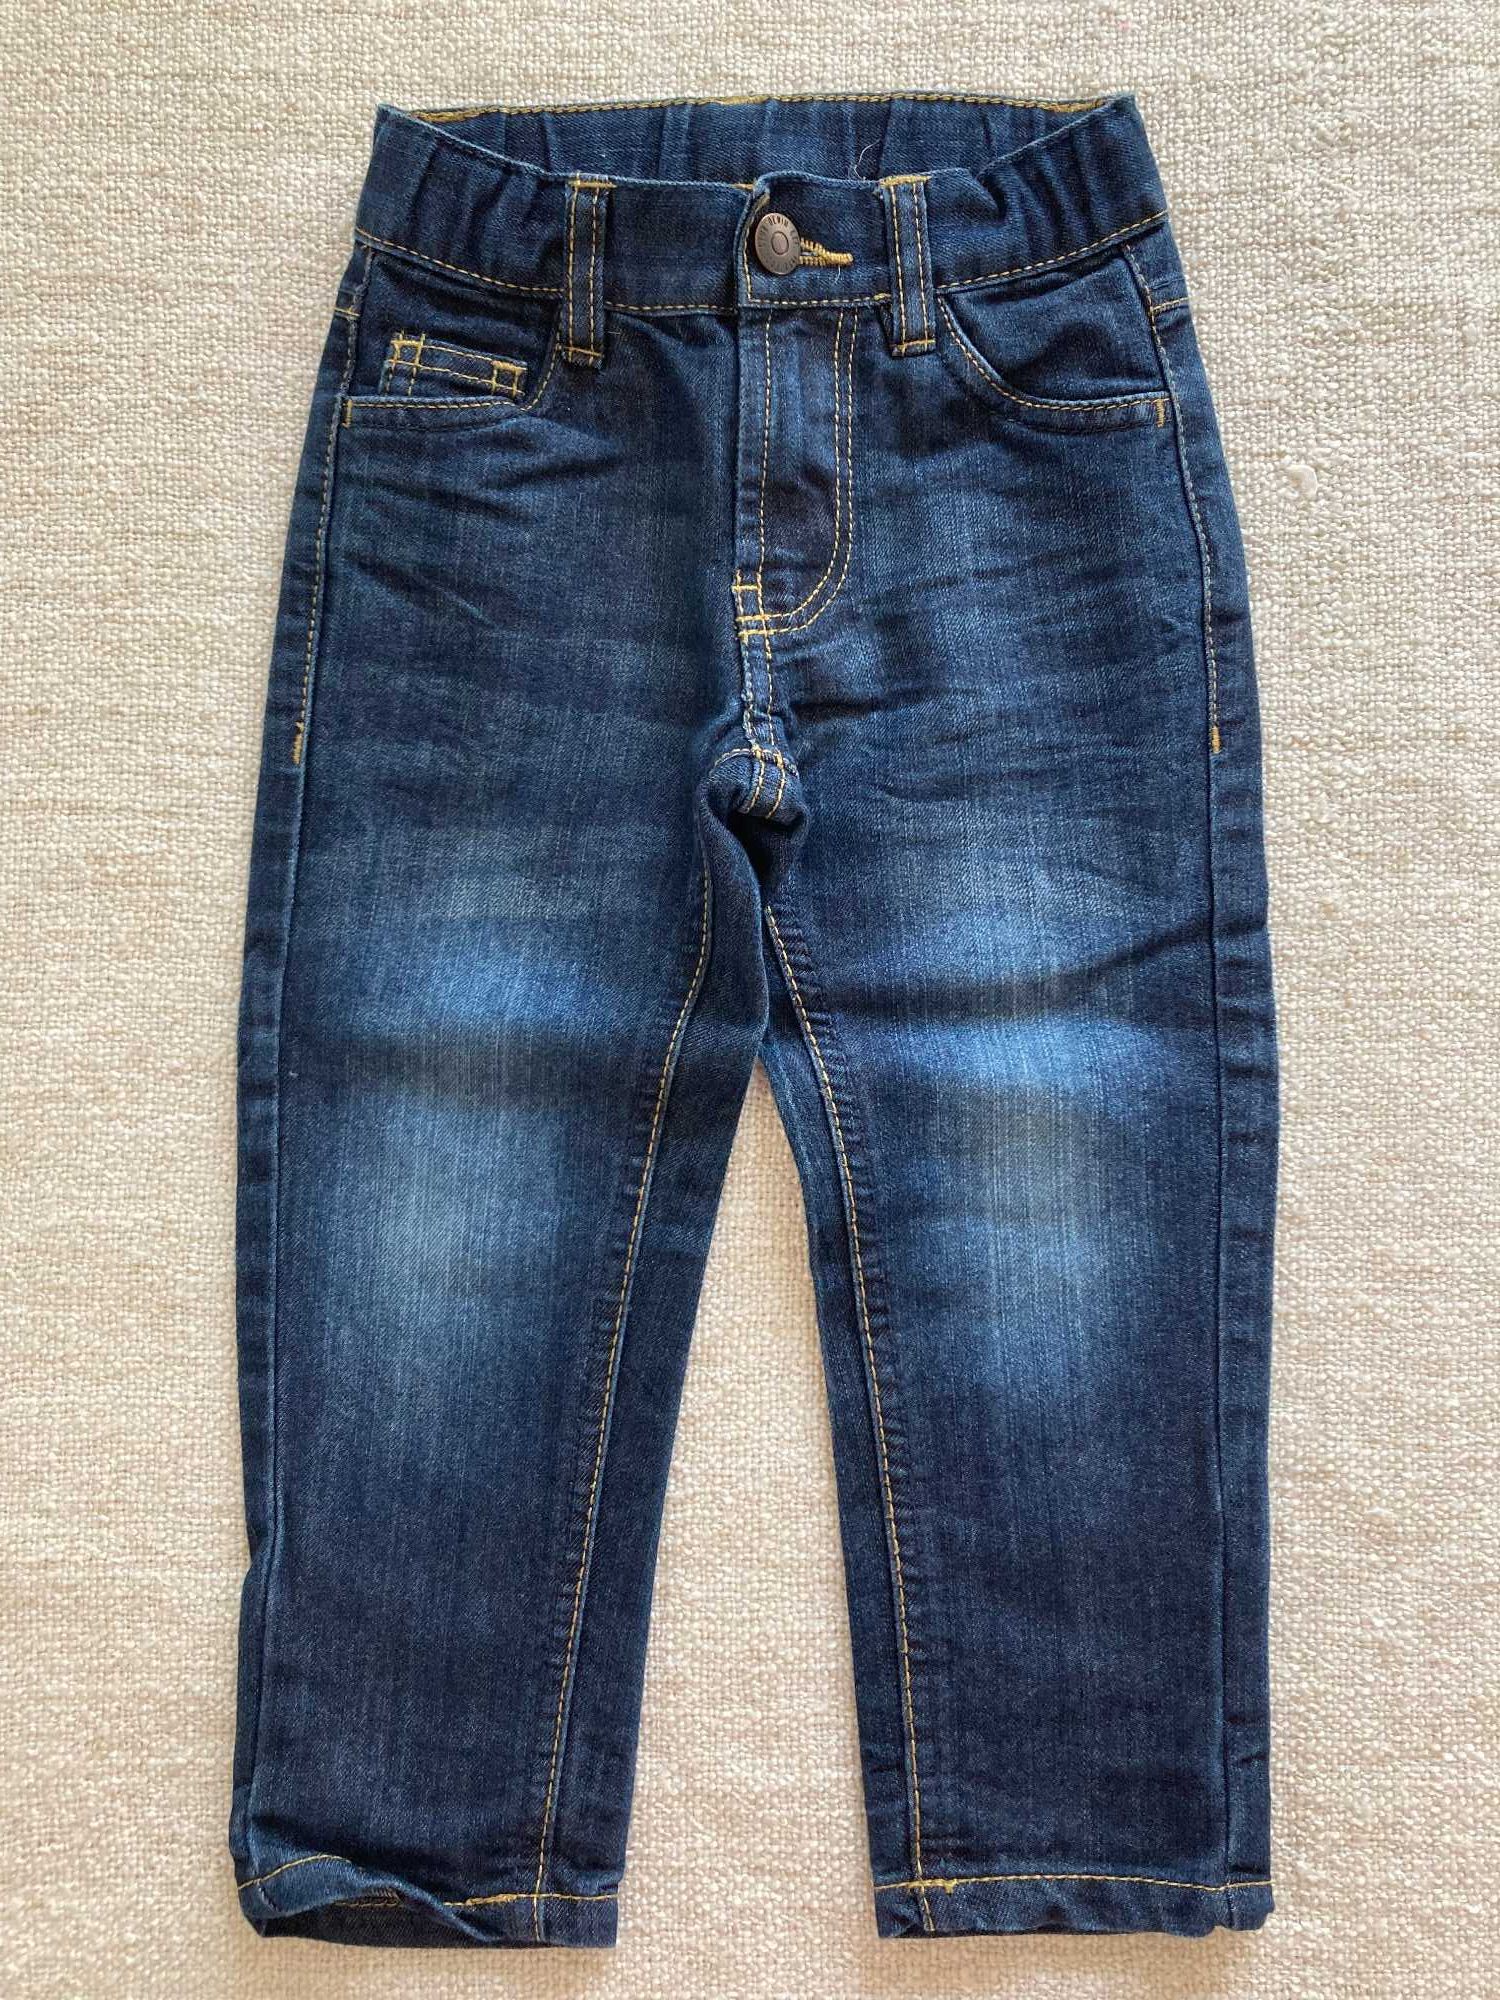 Spodnie Jeans chłopięce Cool Club Smyk rozm. 92 dżinsy jeansy